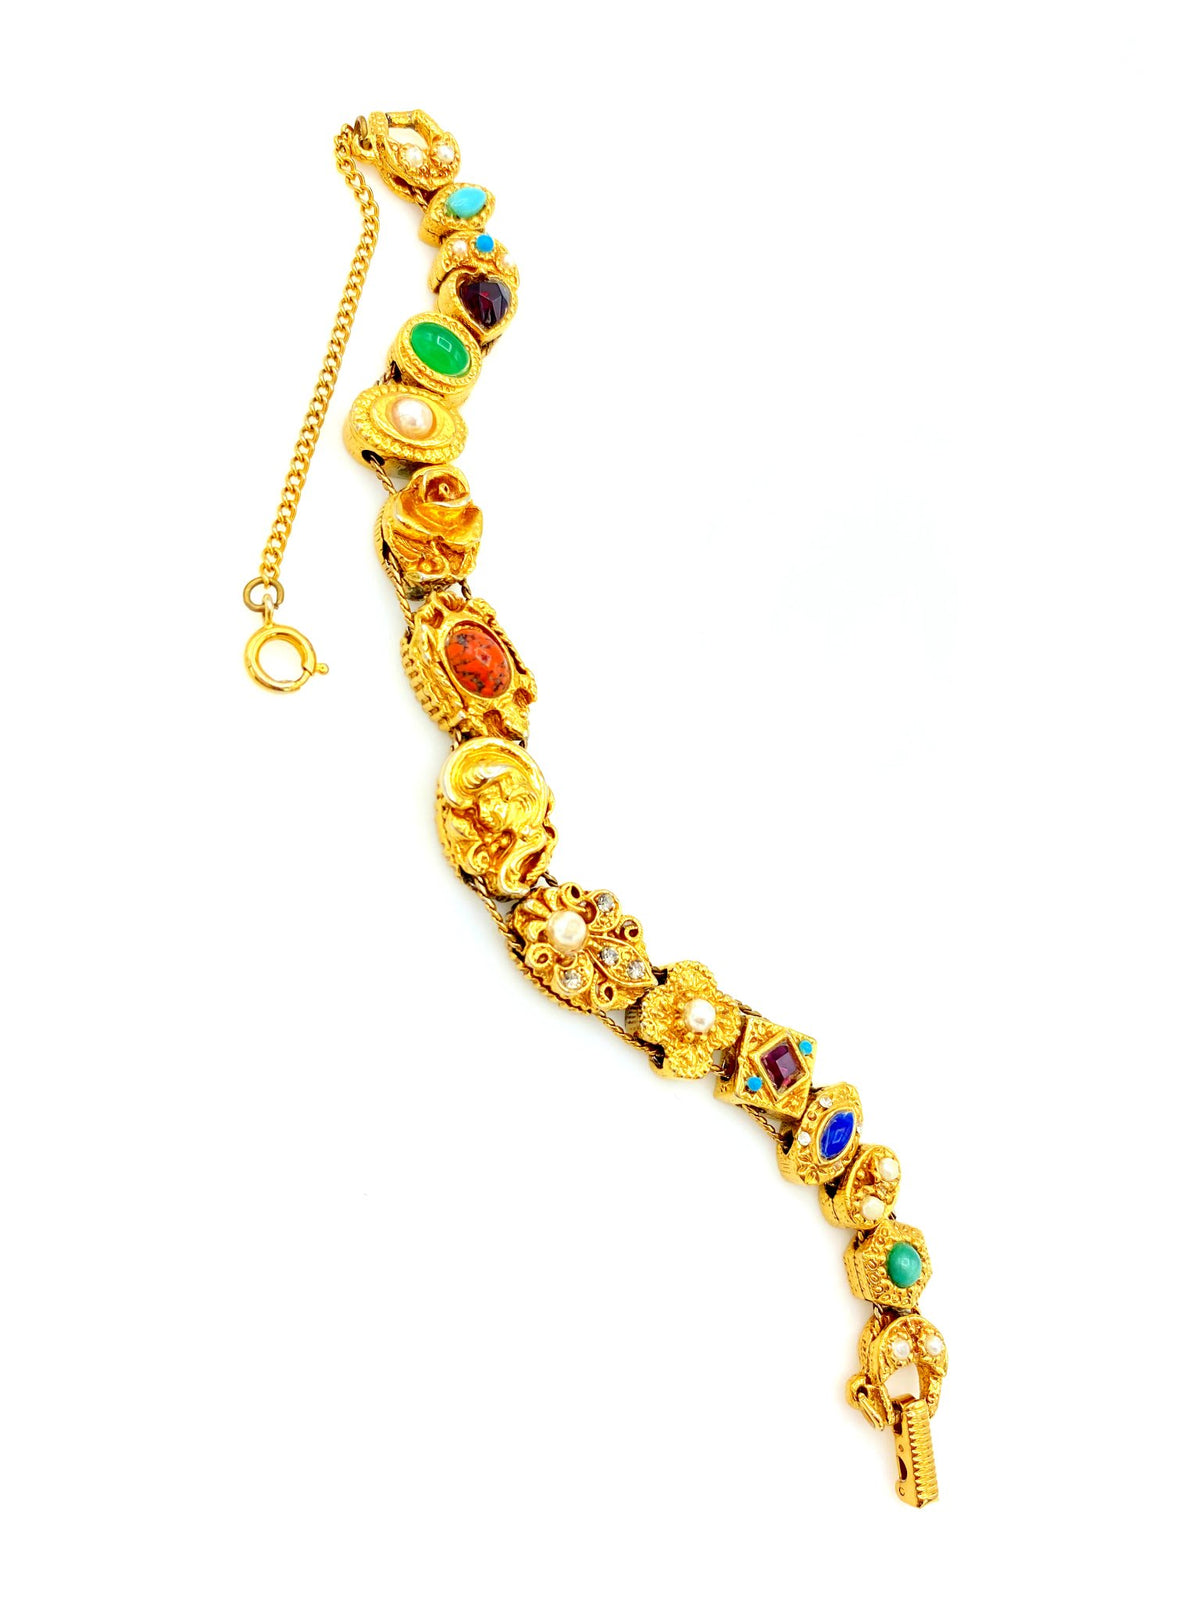 Vintage Gold Victorian Revival Slide Charm Bracelet - 24 Wishes Vintage Jewelry